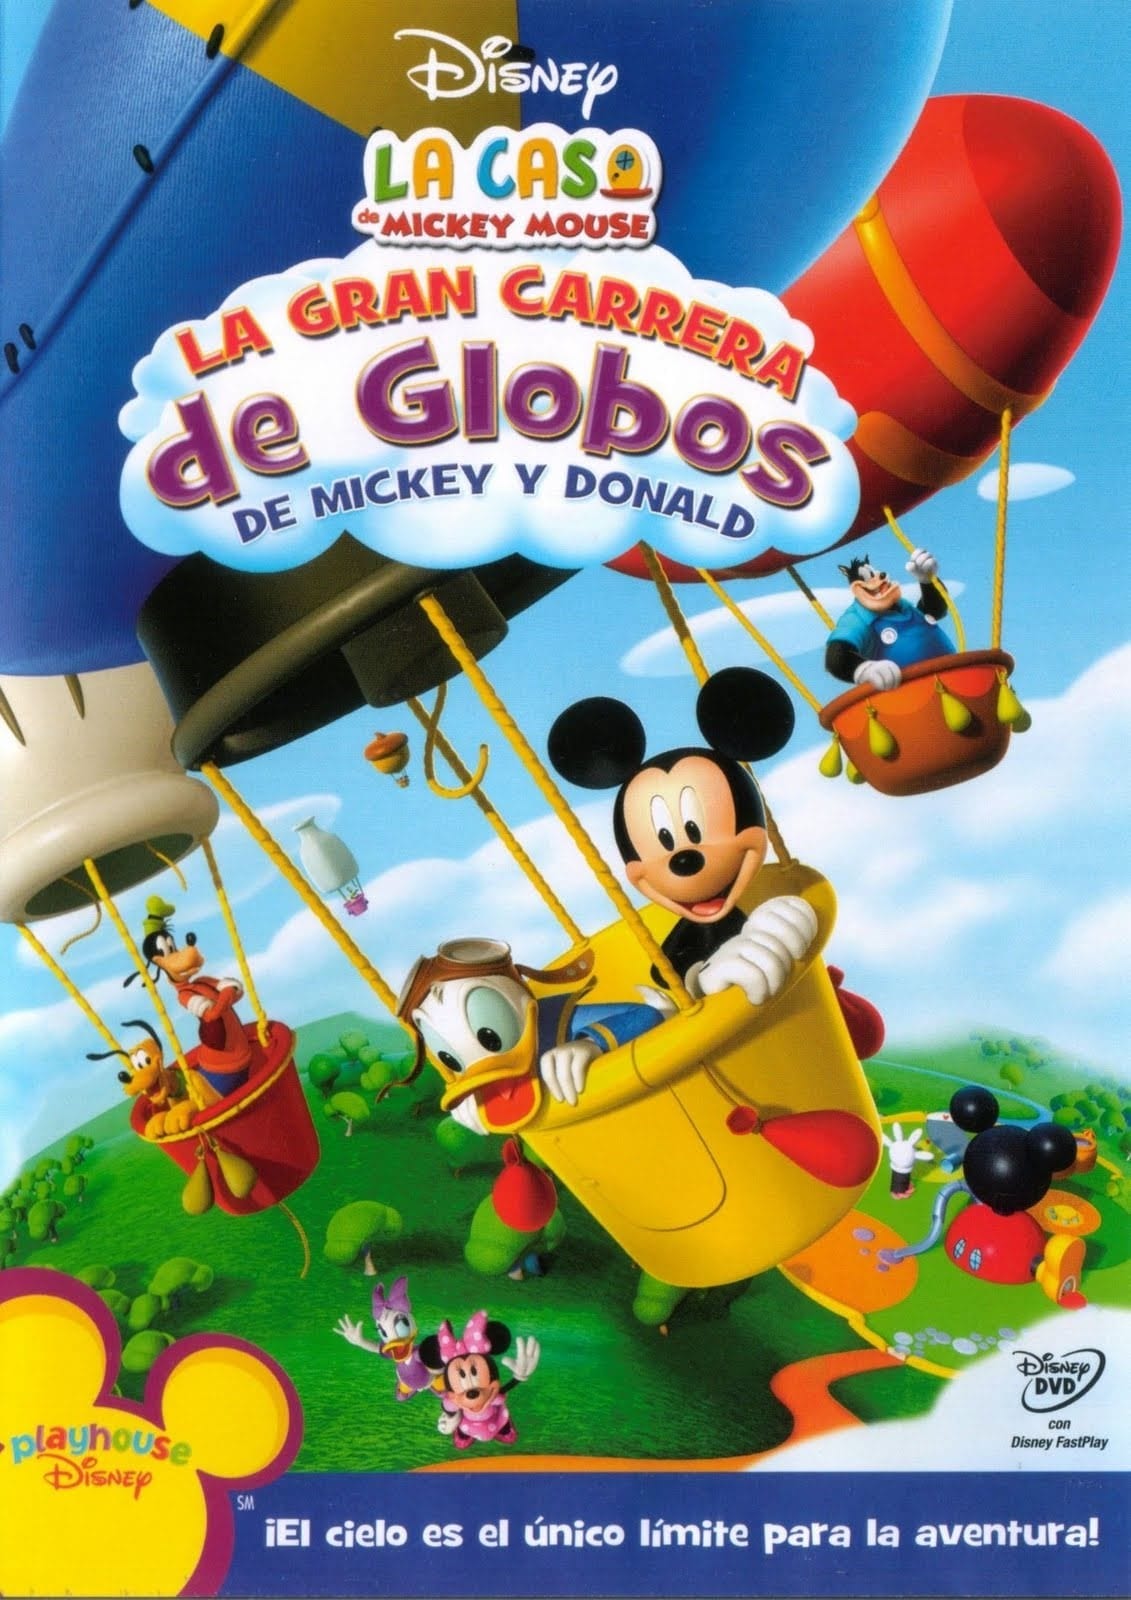 60 Hq Pictures La Casa De Mickey Mouse Descargar Ver La Casa De